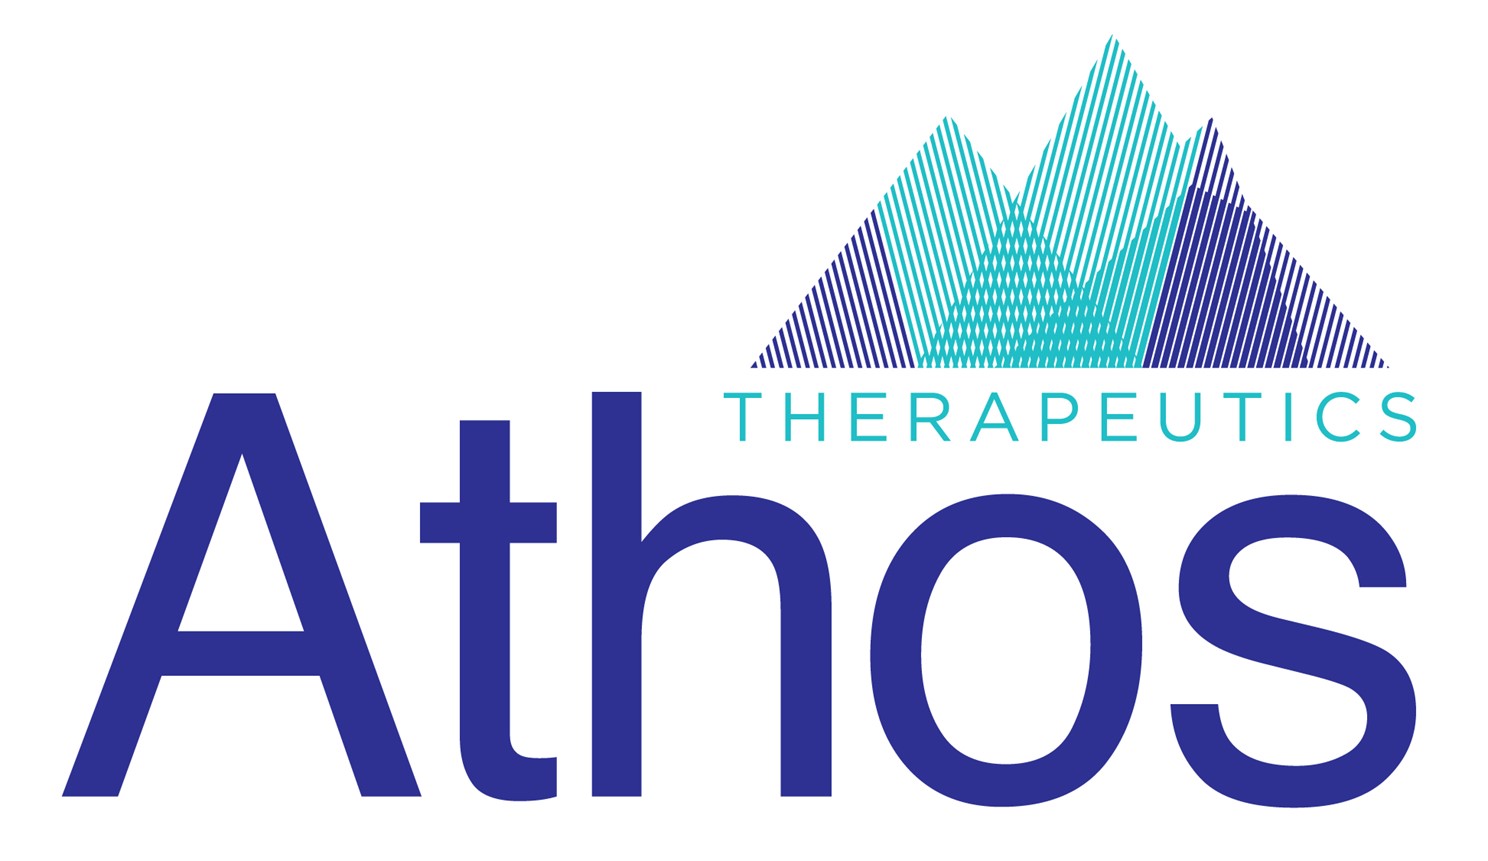 Athos Therapeutics Announces the Autonomization of their Artificial ...